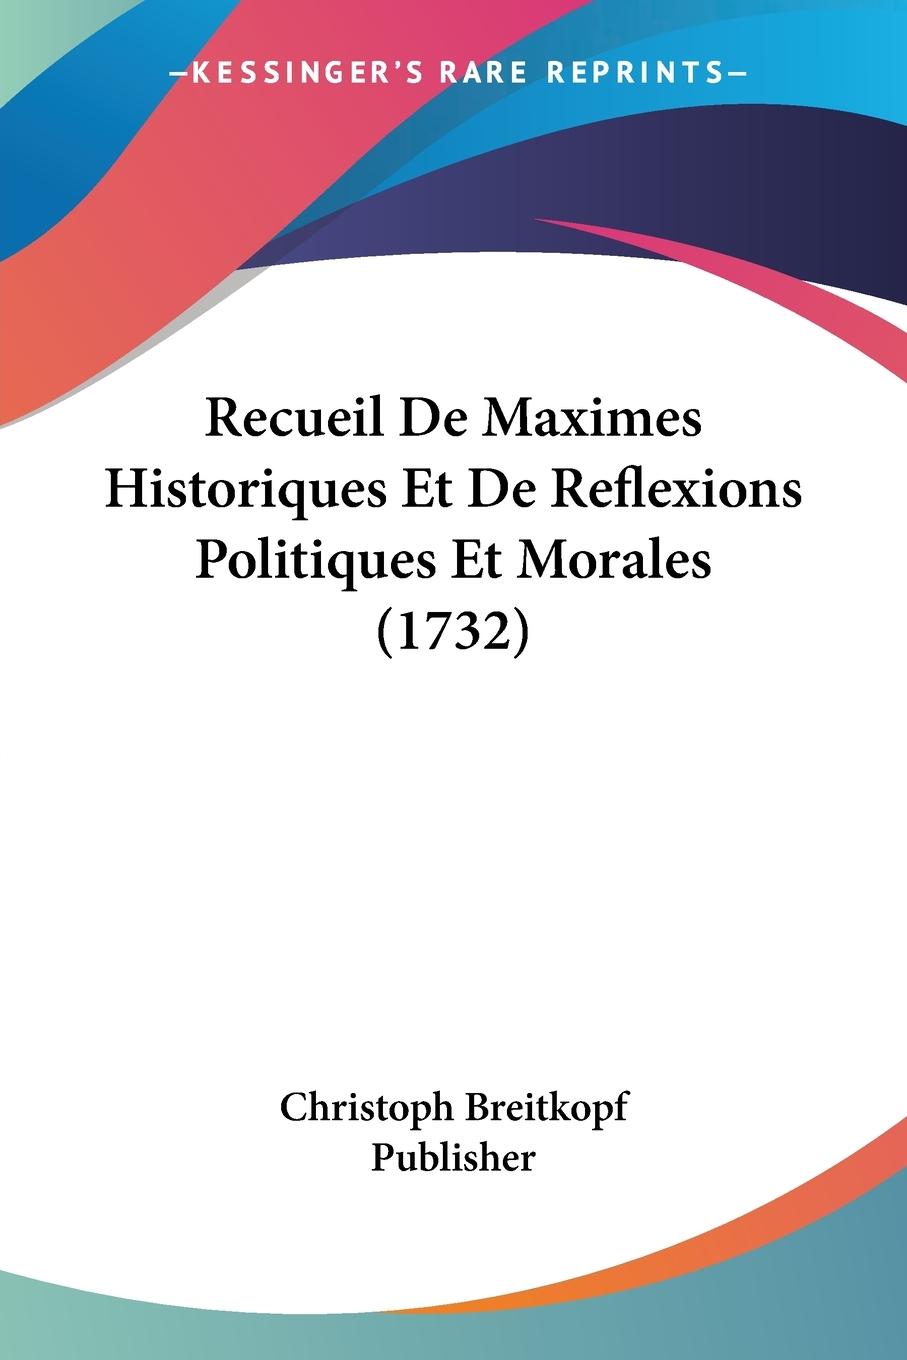 Recueil De Maximes Historiques Et De Reflexions Politiques Et Morales (1732) - Christoph Breitkopf Publisher